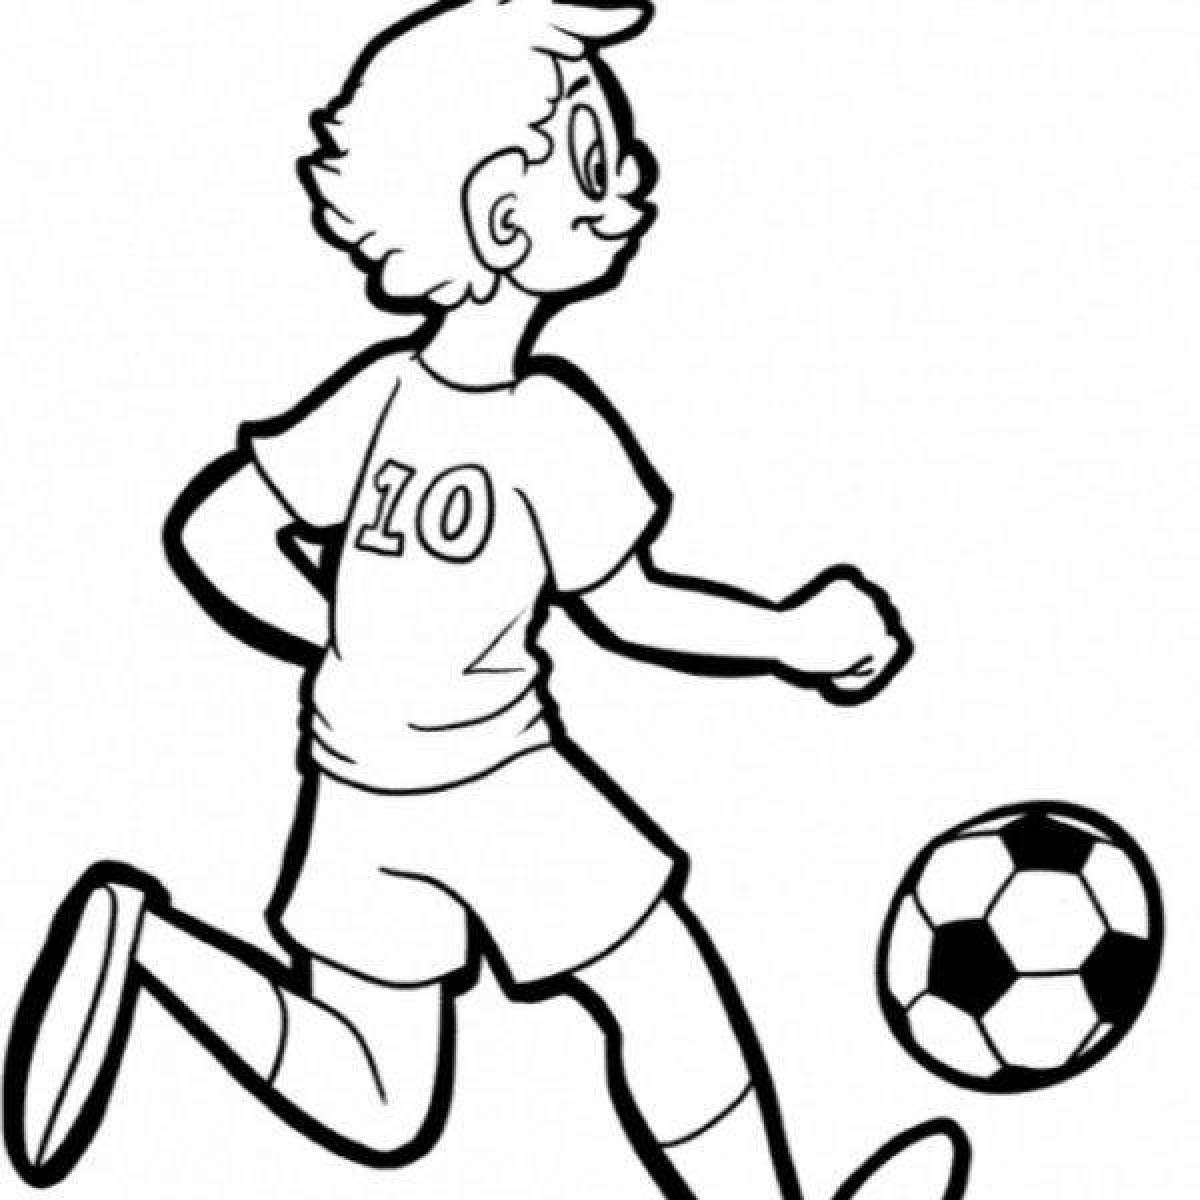 Футболист раскраска для детей